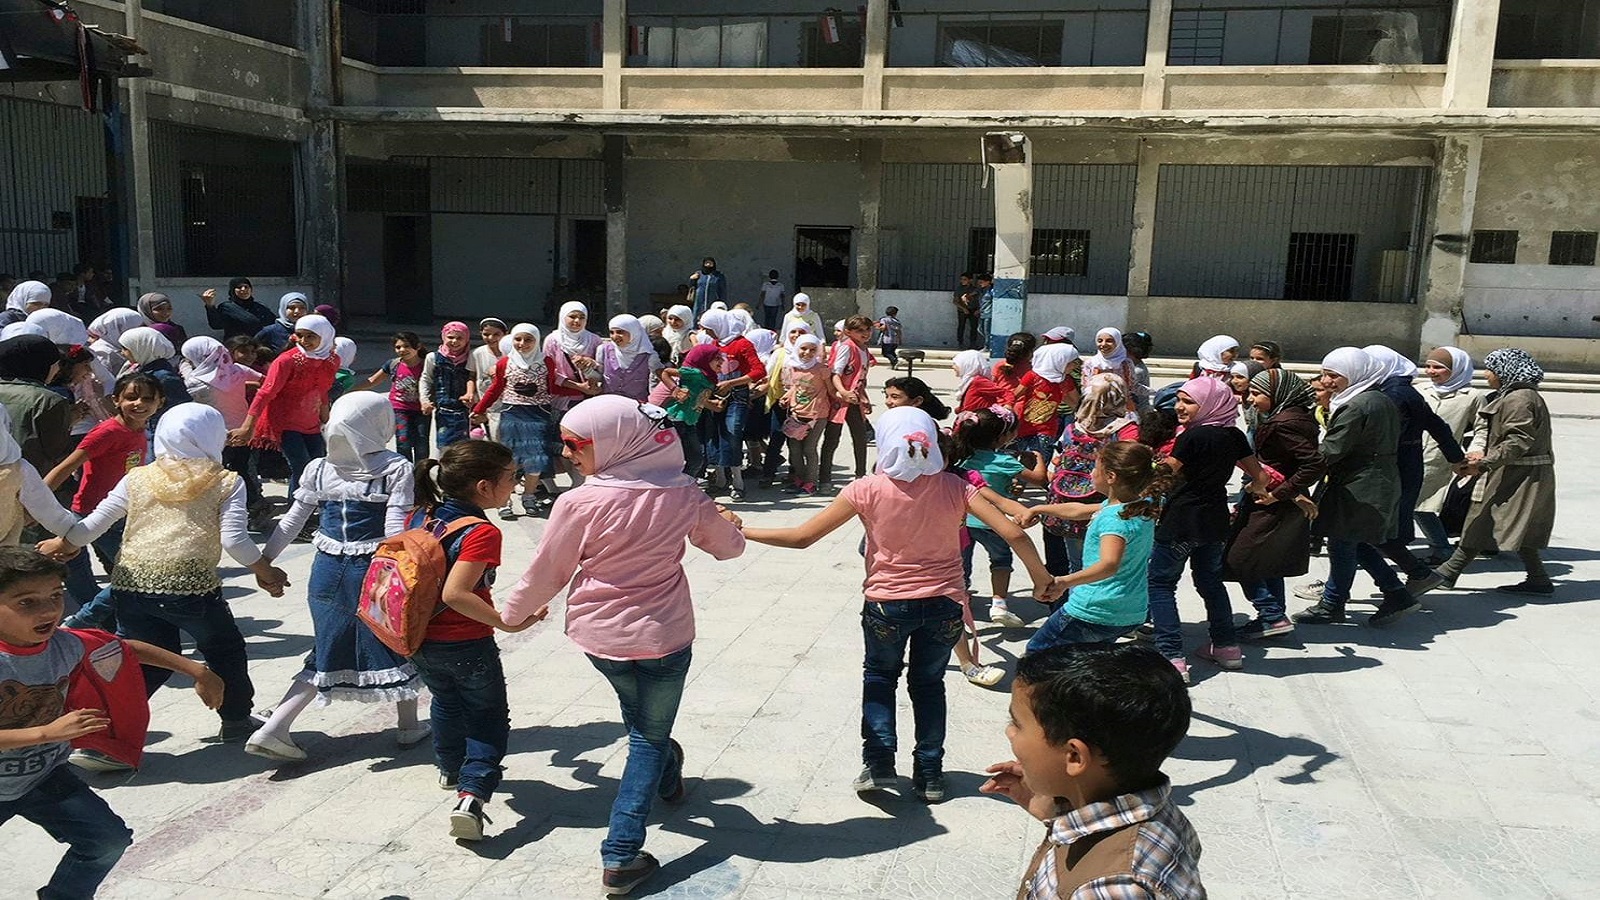 سوريا:العام الدراسي إلزامي..وقرض للدفتر وقلم الرصاص